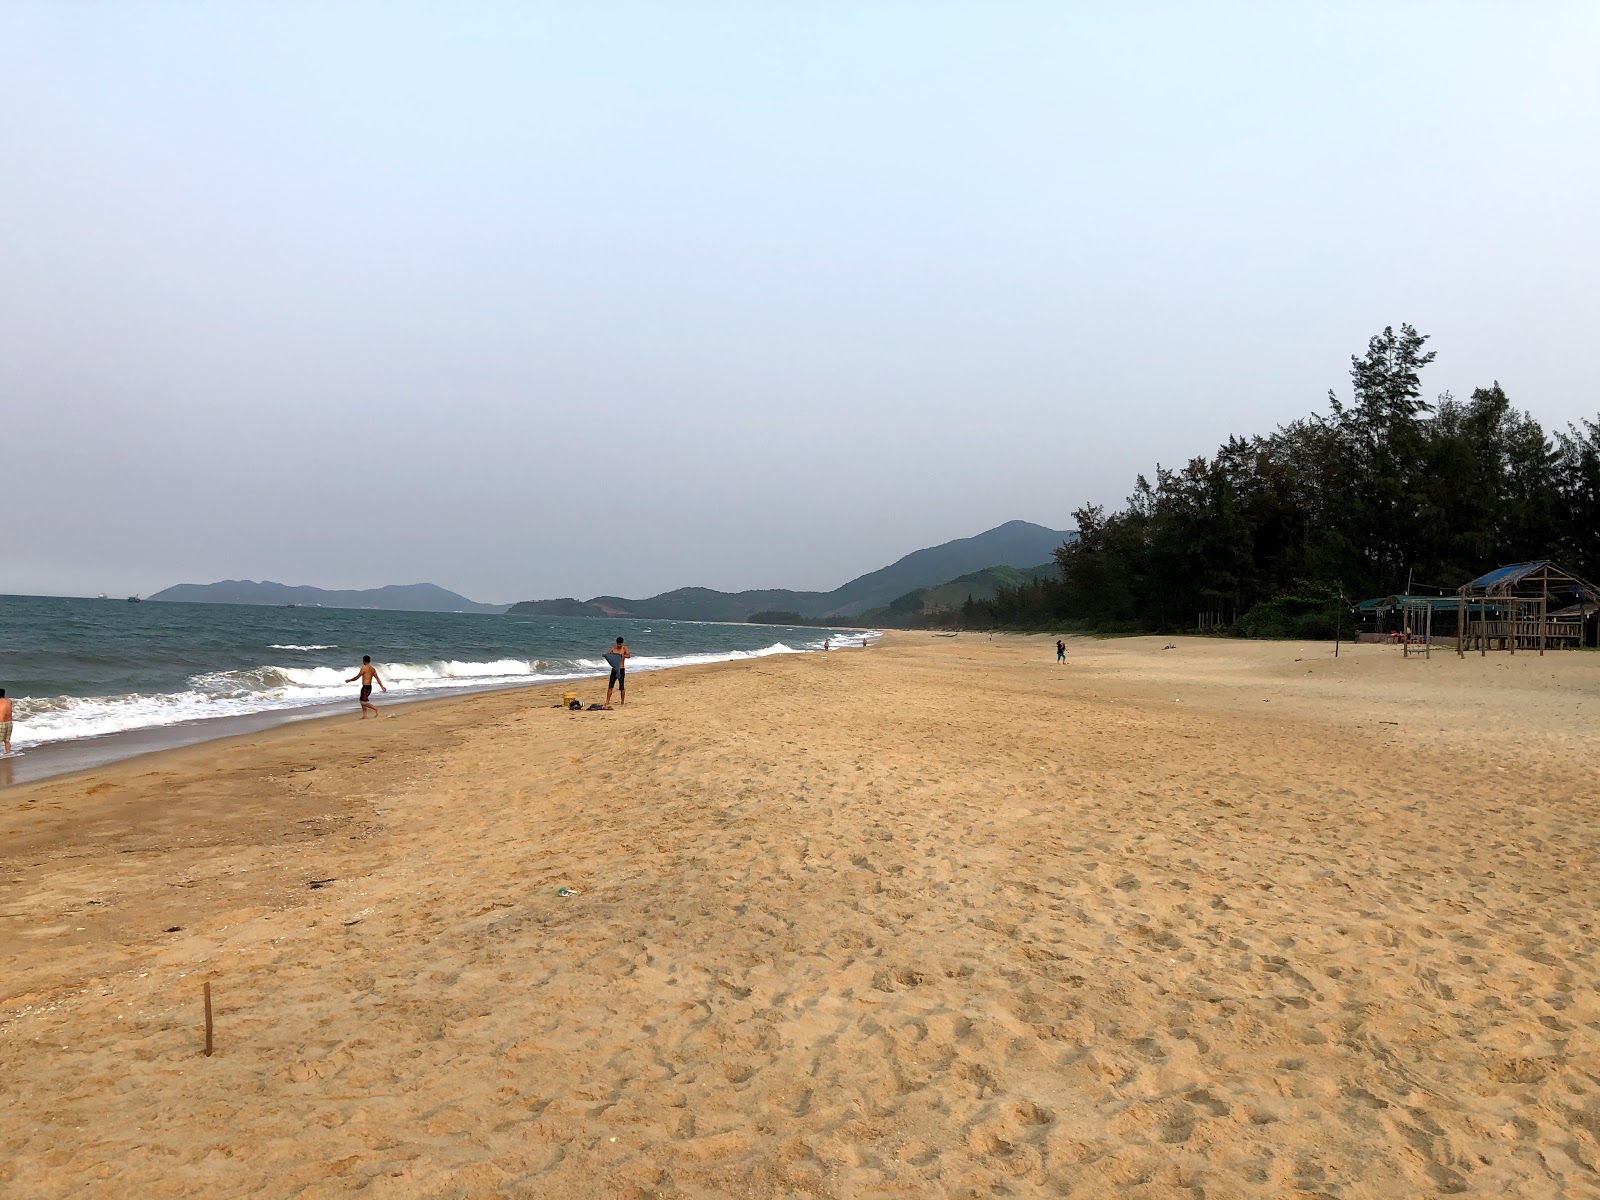 Fotografie cu Vinh Hien Beach cu o suprafață de nisip strălucitor